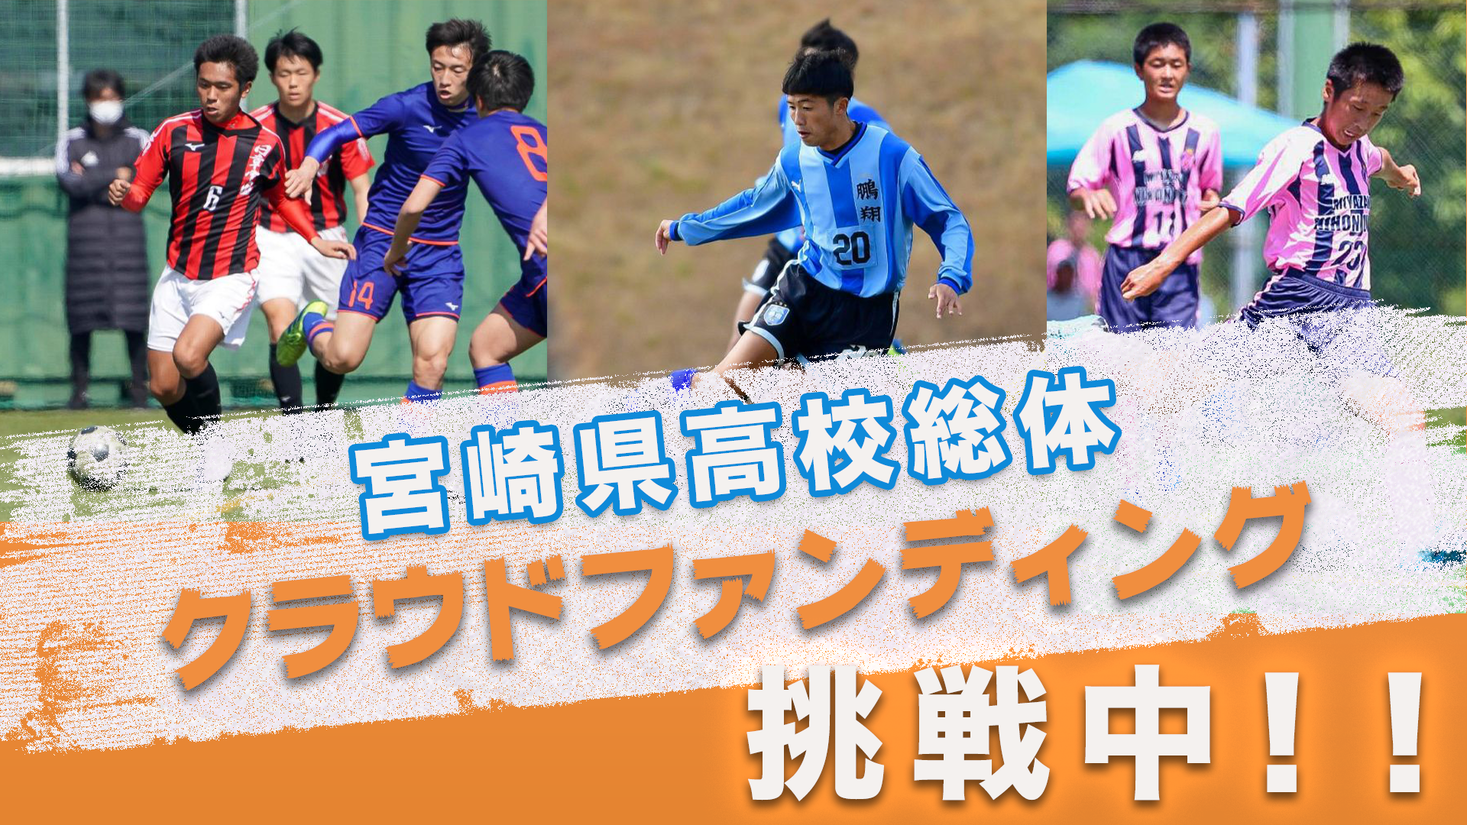 宮崎県サッカー協会2種 高校サッカーを地元が支え 地元を高校サッカー が支える の試みを株式会社グリーンカードがサポートします 株式会社グリーンカードのプレスリリース